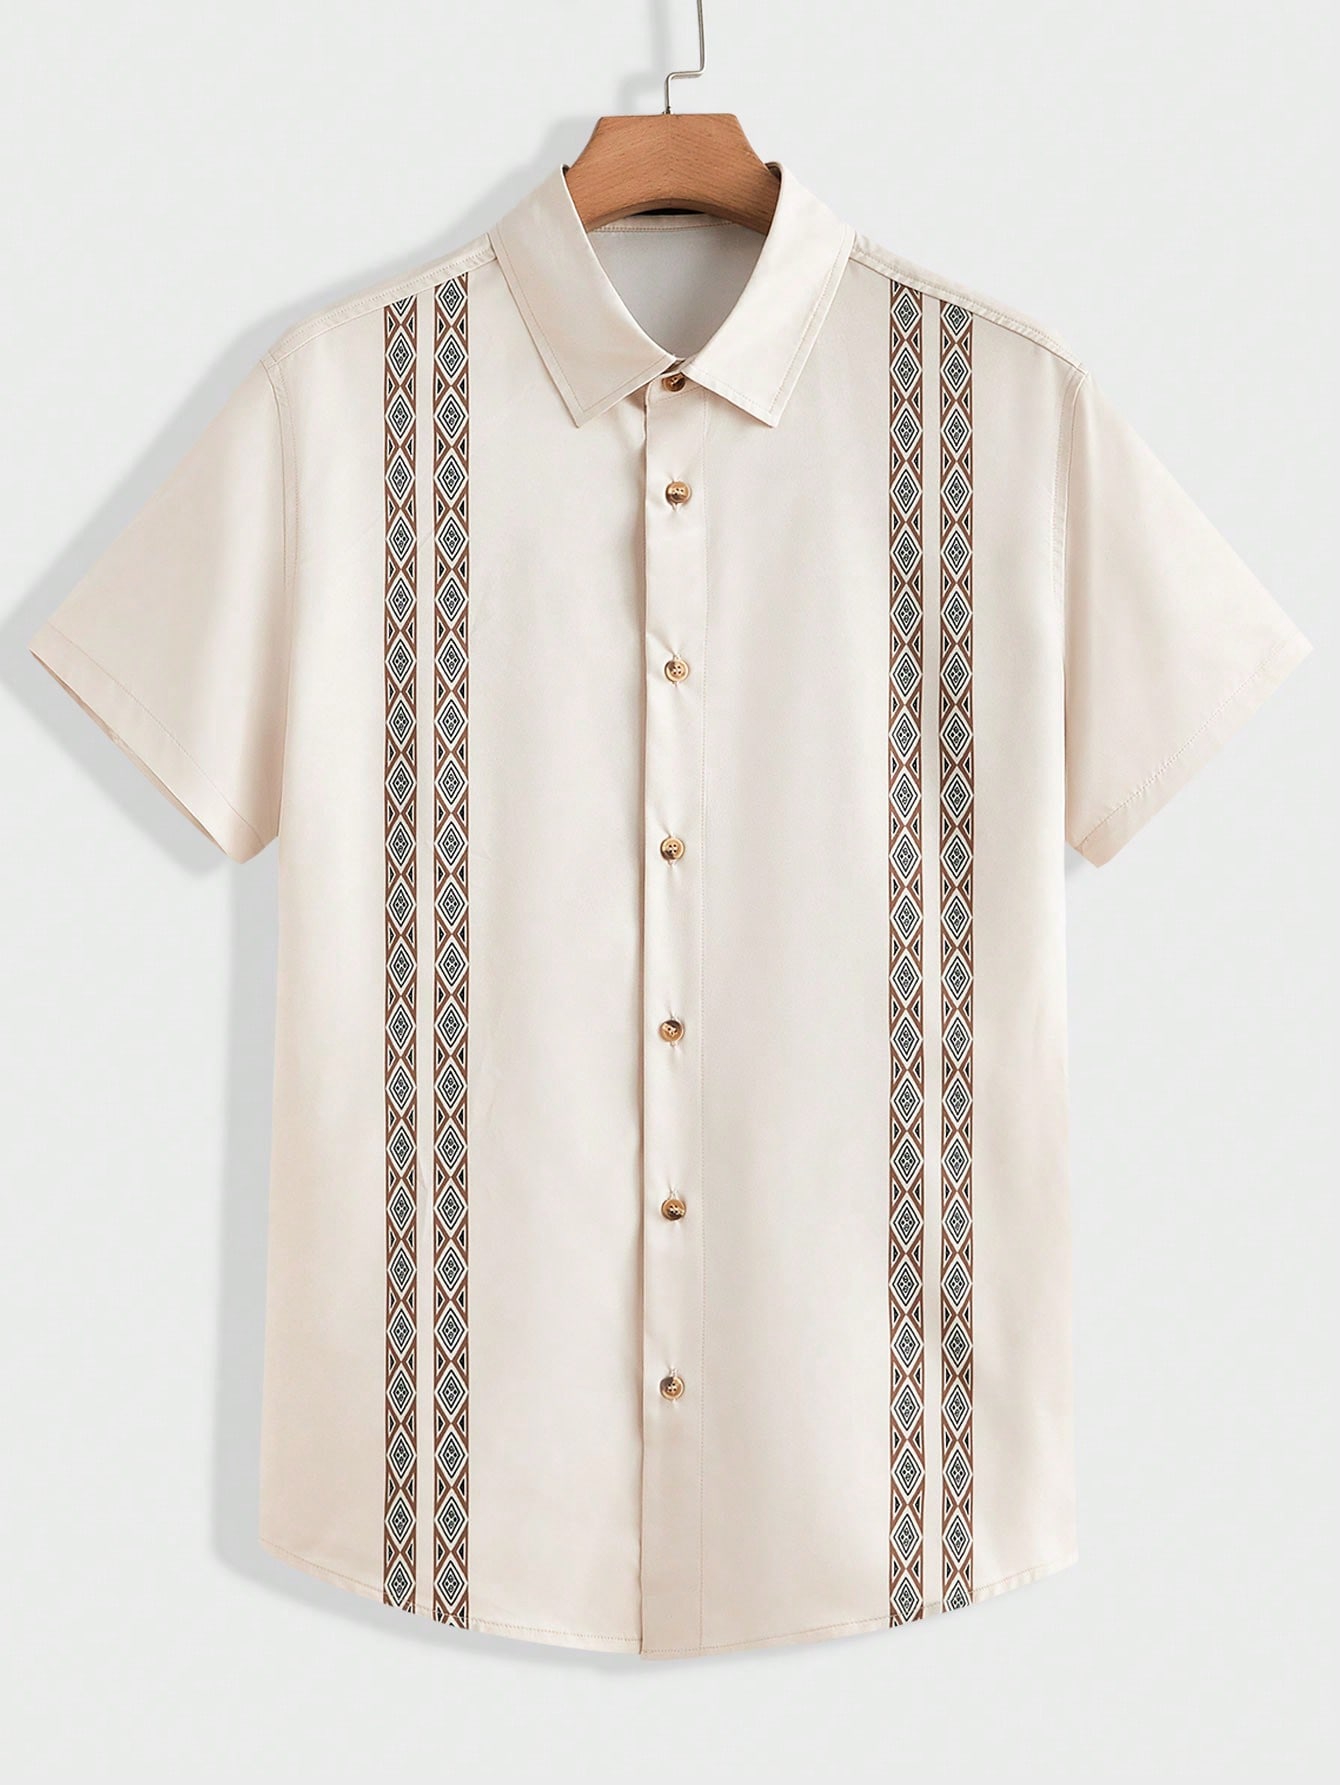 Мужская рубашка на пуговицах с короткими рукавами Manfinity LEGND с геометрическим принтом, белый мужская футболка с короткими рукавами и принтом масляной живописи manfinity legnd черный